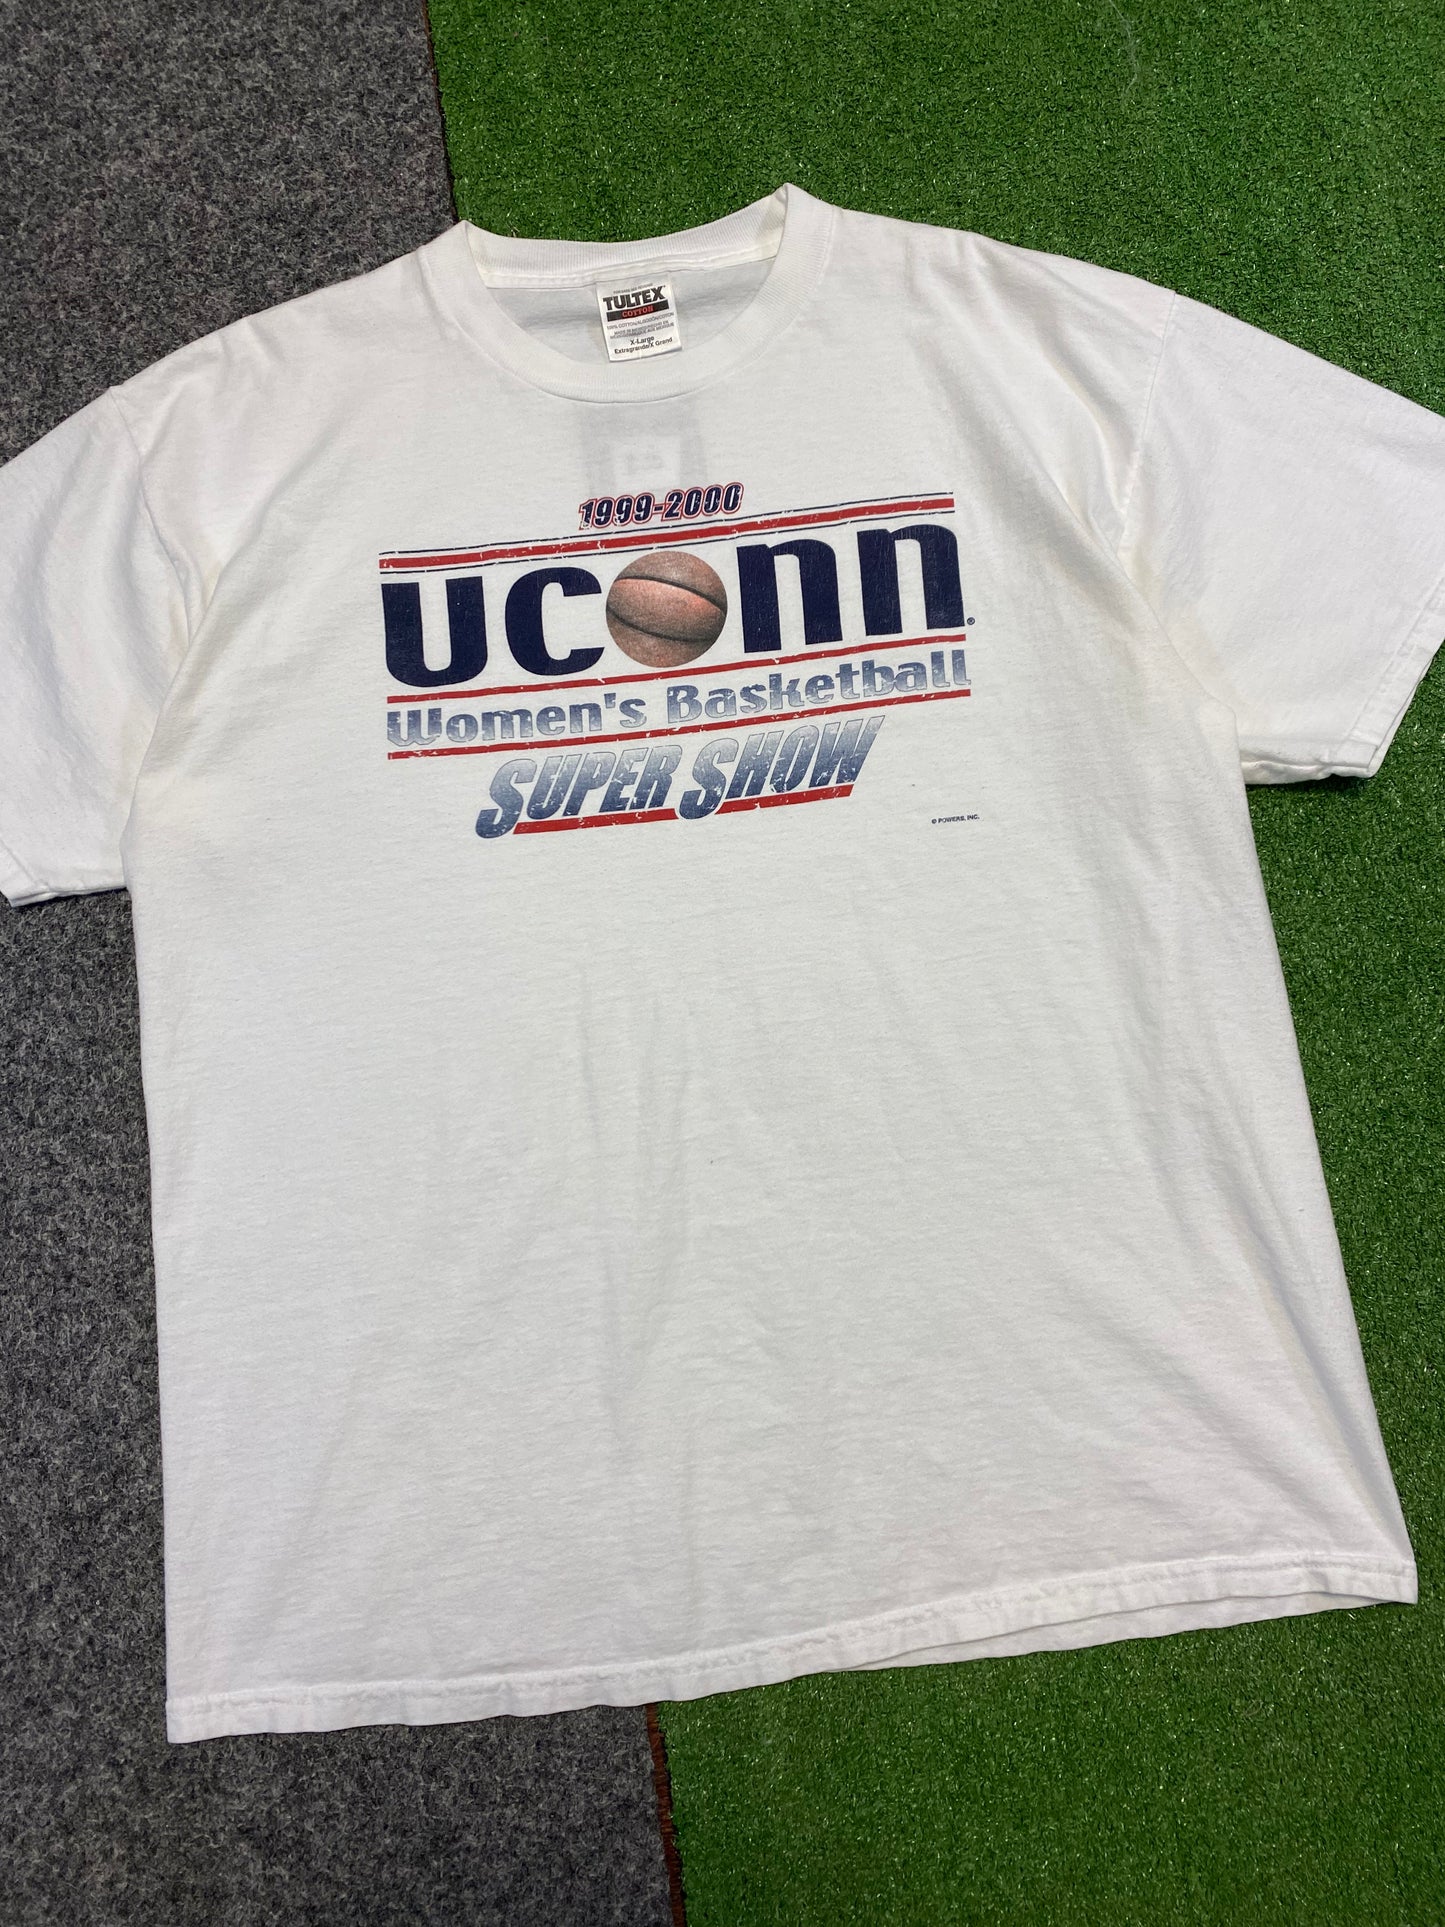 2000 UConn Women’s Basketball Supershow T-Shirt